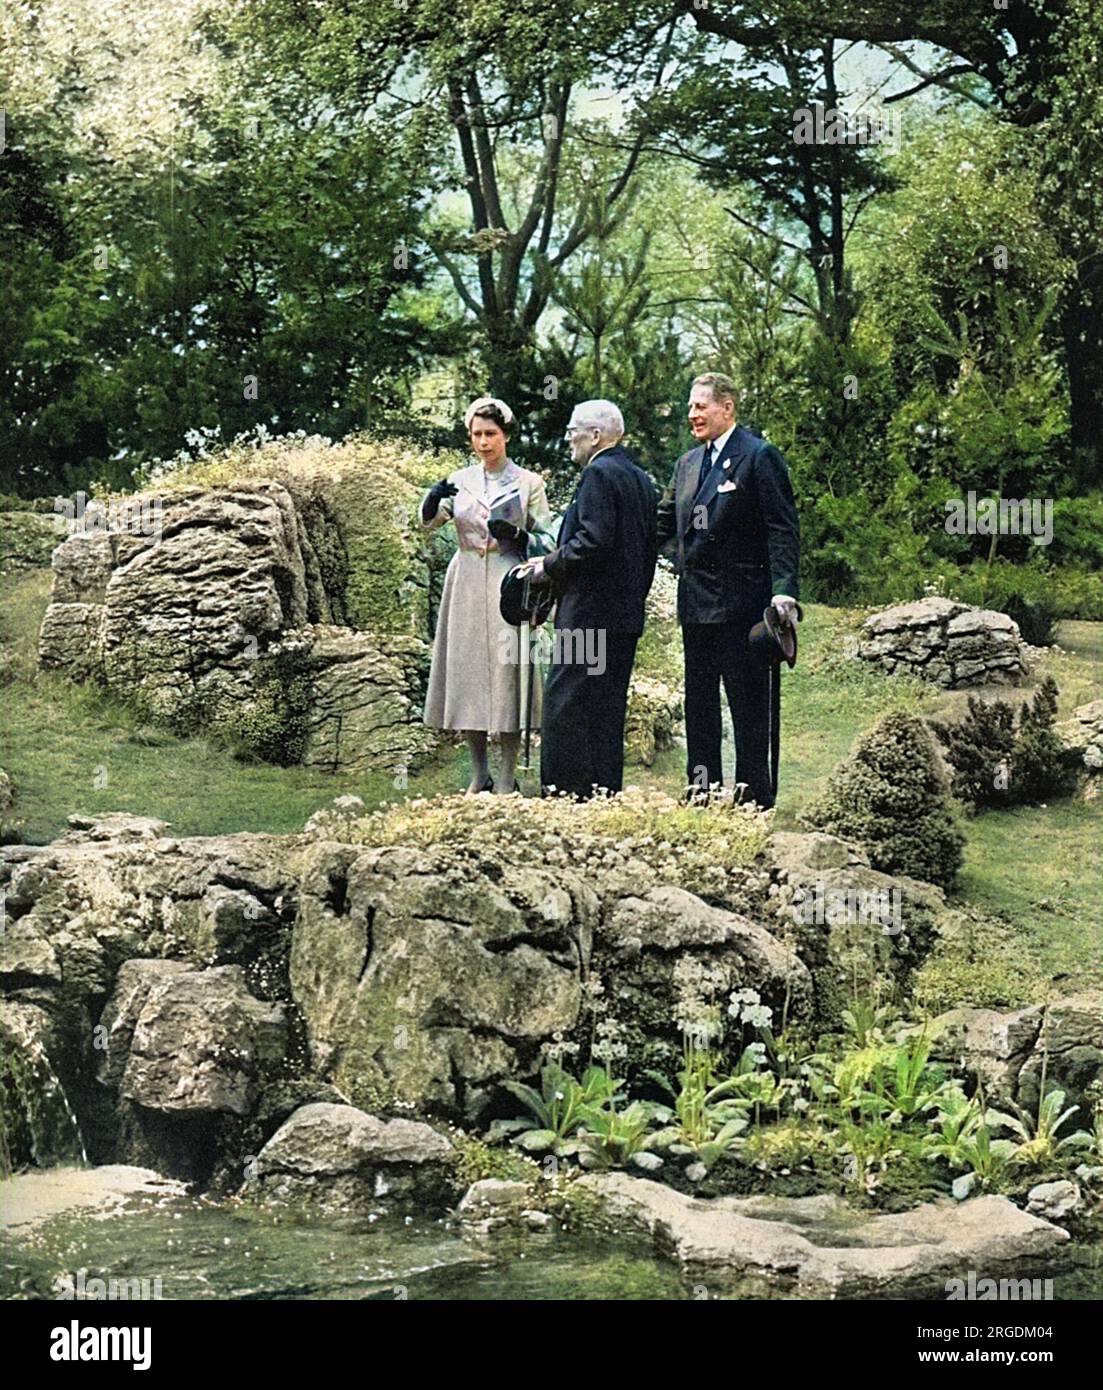 La regina Elisabetta II visitò il Chelsea Flower Show nel 1955, ispezionando un giardino roccioso che ha attirato la sua attenzione. È diretta intorno allo spettacolo da suo zio materno, l'onorevole David Bowes-Lyon. Foto Stock